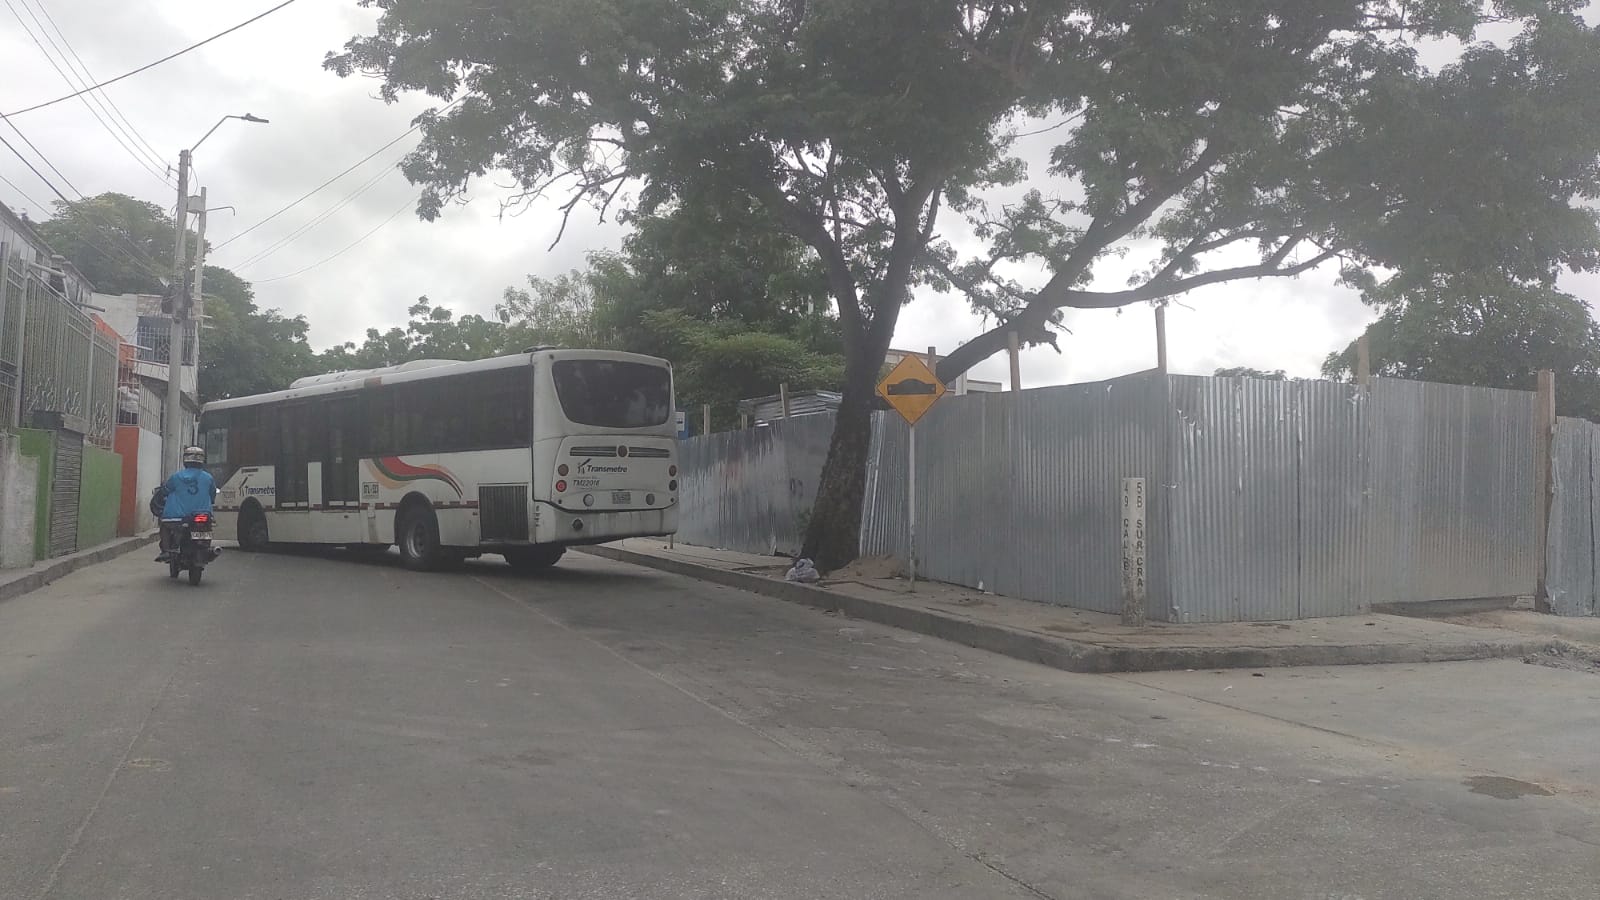 Bus de Transmetro fue espichado y atravesado en la vía del barrio 7 de abril.